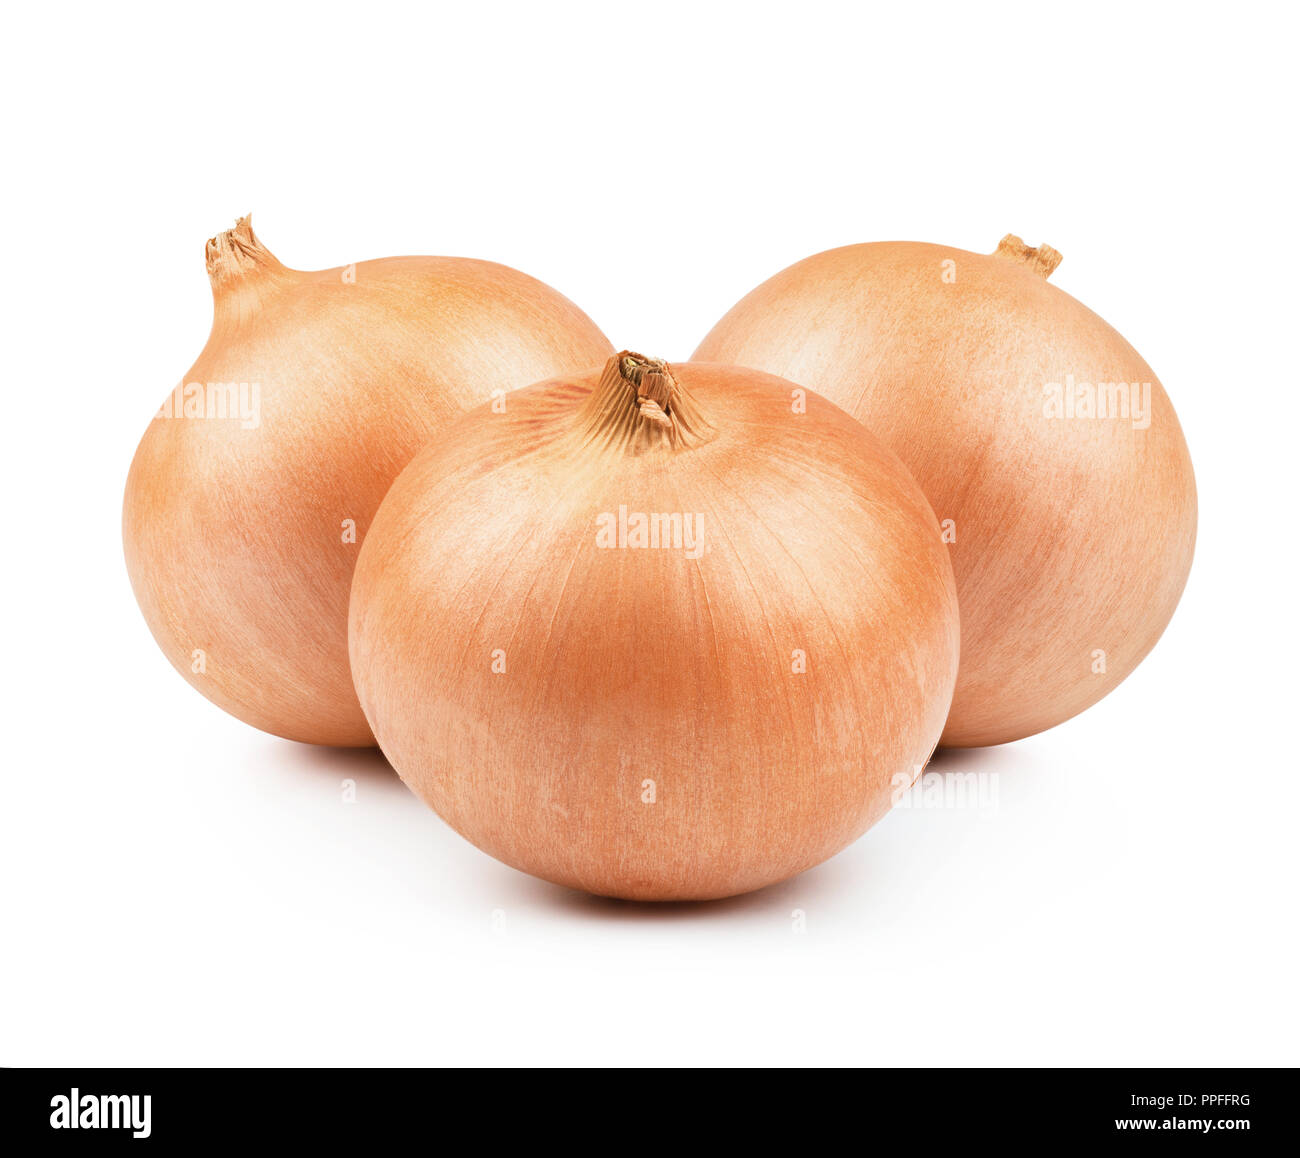 Orange onion vegetable closeup on white background Stock Photo